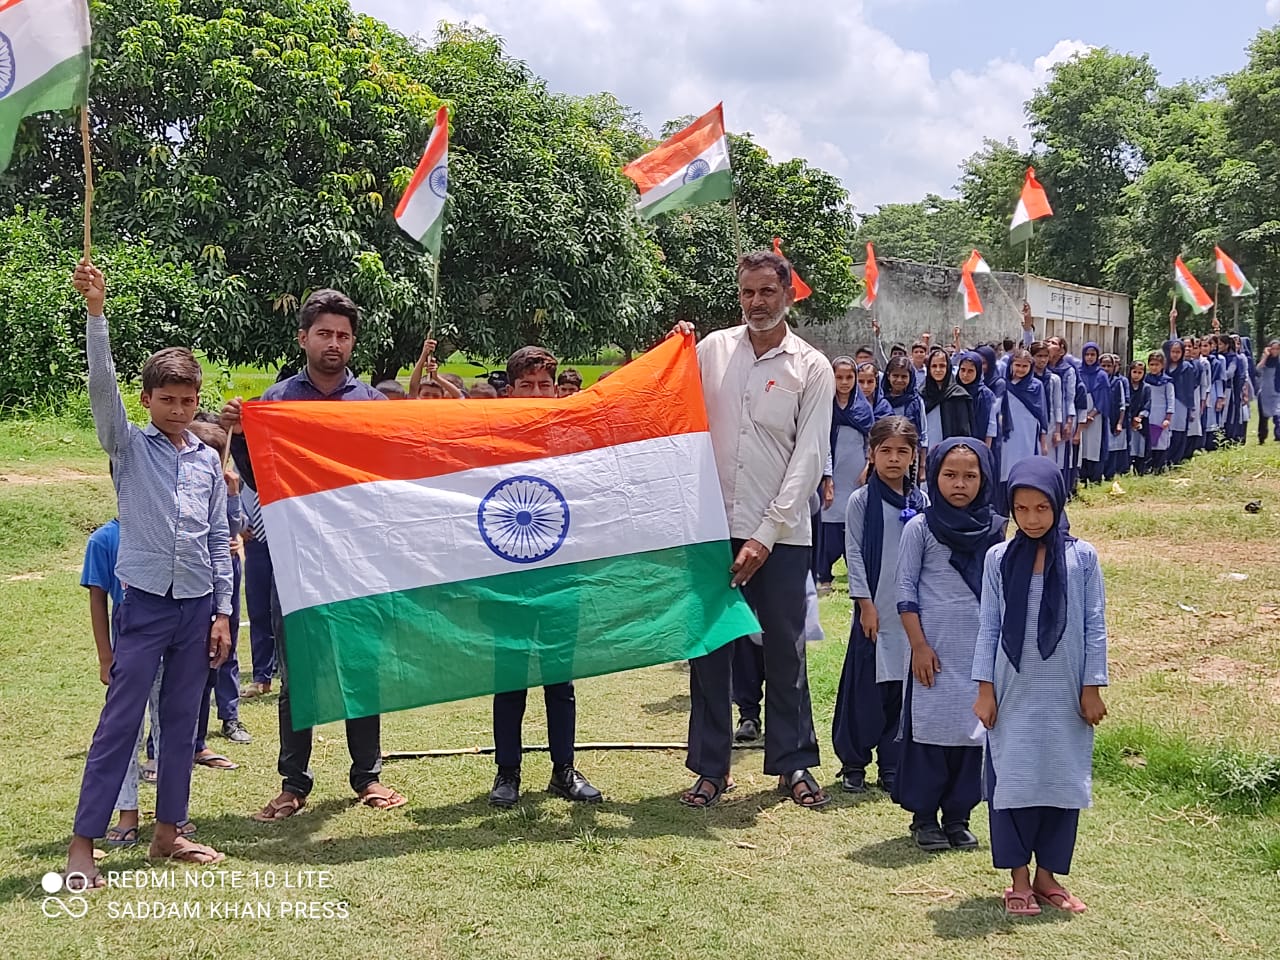 आजादी के अमृत महोत्सव के अंतर्गत इकरा पब्लिक स्कूल मटियार उर्फ भुतहवा बढ़नी सिद्धार्थनगर के छात्र छात्राओं द्वारा निकाला गया तिरंगा यात्रा | New India Times